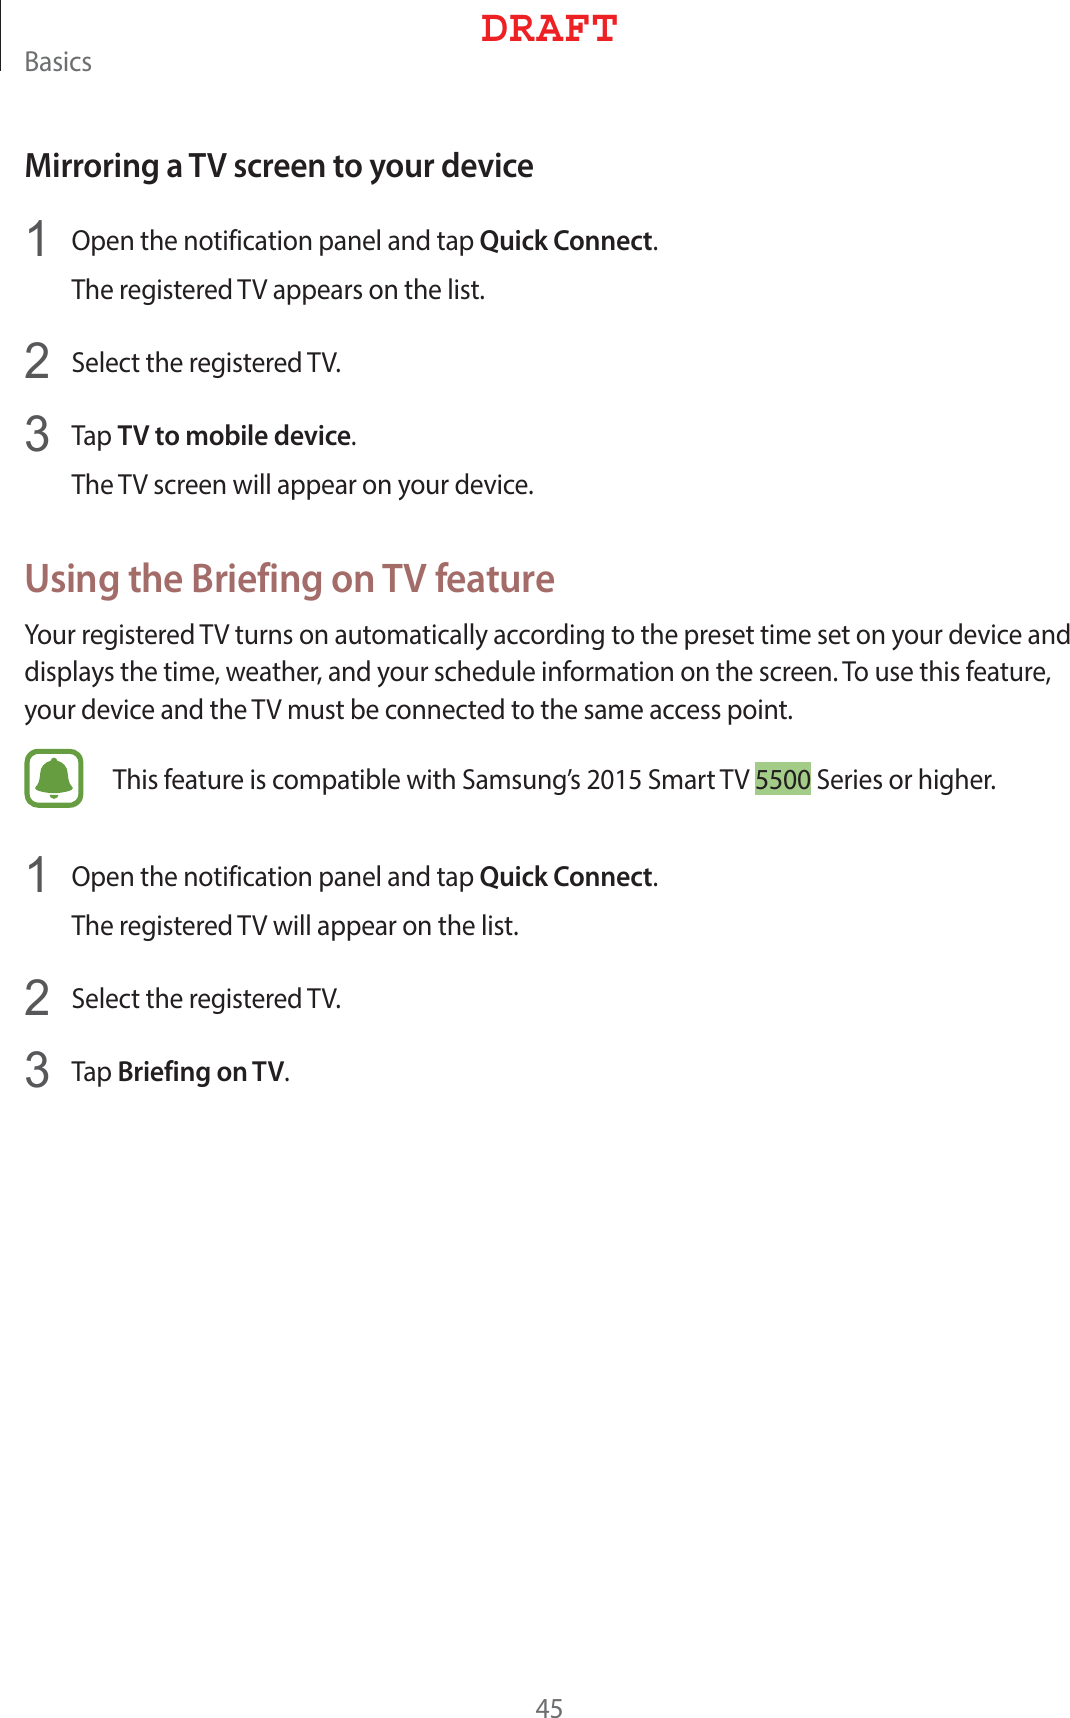 #BTJDTMirroring a TV screen to your device1  0QFOUIFOPUJGJDBUJPOQBOFMBOEUBQQuick Connect5IFSFHJTUFSFE57BQQFBSTPOUIFMJTU2  4FMFDUUIFSFHJTUFSFE573  5BQTV to mobile device5IF57TDSFFOXJMMBQQFBSPOZPVSEFWJDFUsing the Briefing on TV feature:PVSSFHJTUFSFE57UVSOTPOBVUPNBUJDBMMZBDDPSEJOHUPUIFQSFTFUUJNFTFUPOZPVSEFWJDFBOEEJTQMBZTUIFUJNFXFBUIFSBOEZPVSTDIFEVMFJOGPSNBUJPOPOUIFTDSFFO5PVTFUIJTGFBUVSFZPVSEFWJDFBOEUIF57NVTUCFDPOOFDUFEUPUIFTBNFBDDFTTQPJOU5IJTGFBUVSFJTDPNQBUJCMFXJUI4BNTVOHT4NBSU574FSJFTPSIJHIFS1  0QFOUIFOPUJGJDBUJPOQBOFMBOEUBQQuick Connect5IFSFHJTUFSFE57XJMMBQQFBSPOUIFMJTU2  4FMFDUUIFSFHJTUFSFE573  5BQBriefing on TV%3&quot;&apos;5